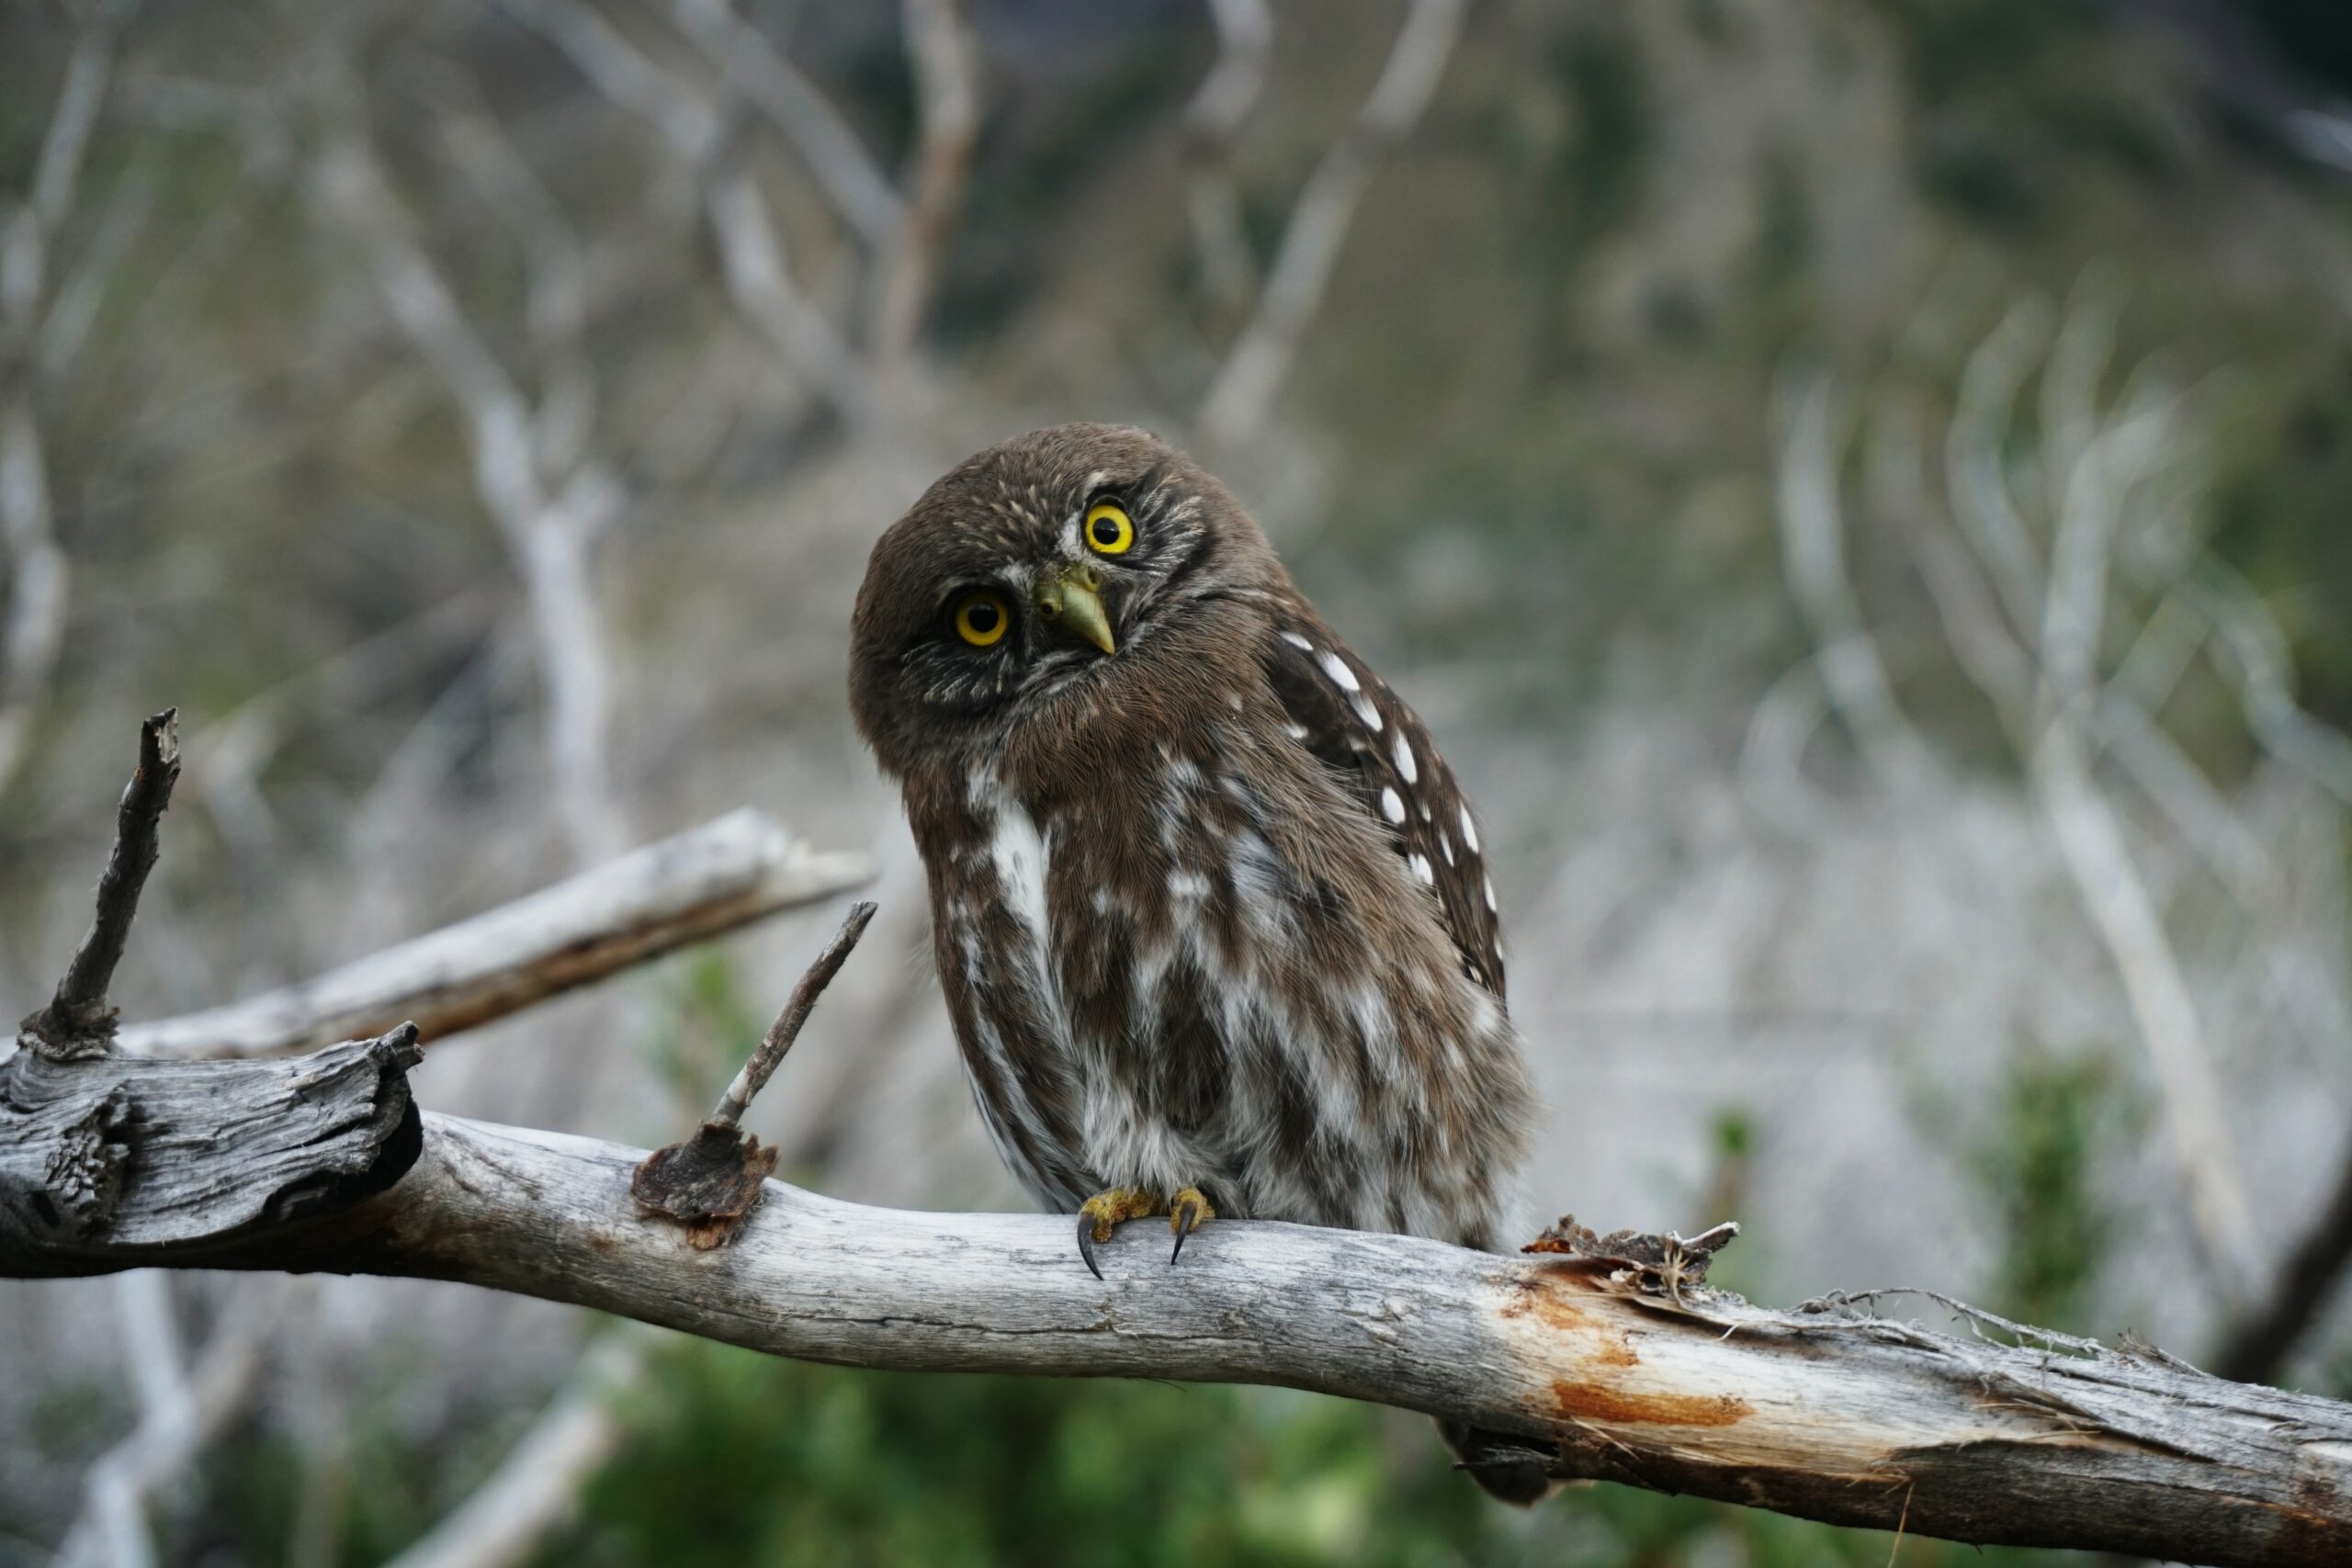 The Wisdom Owl